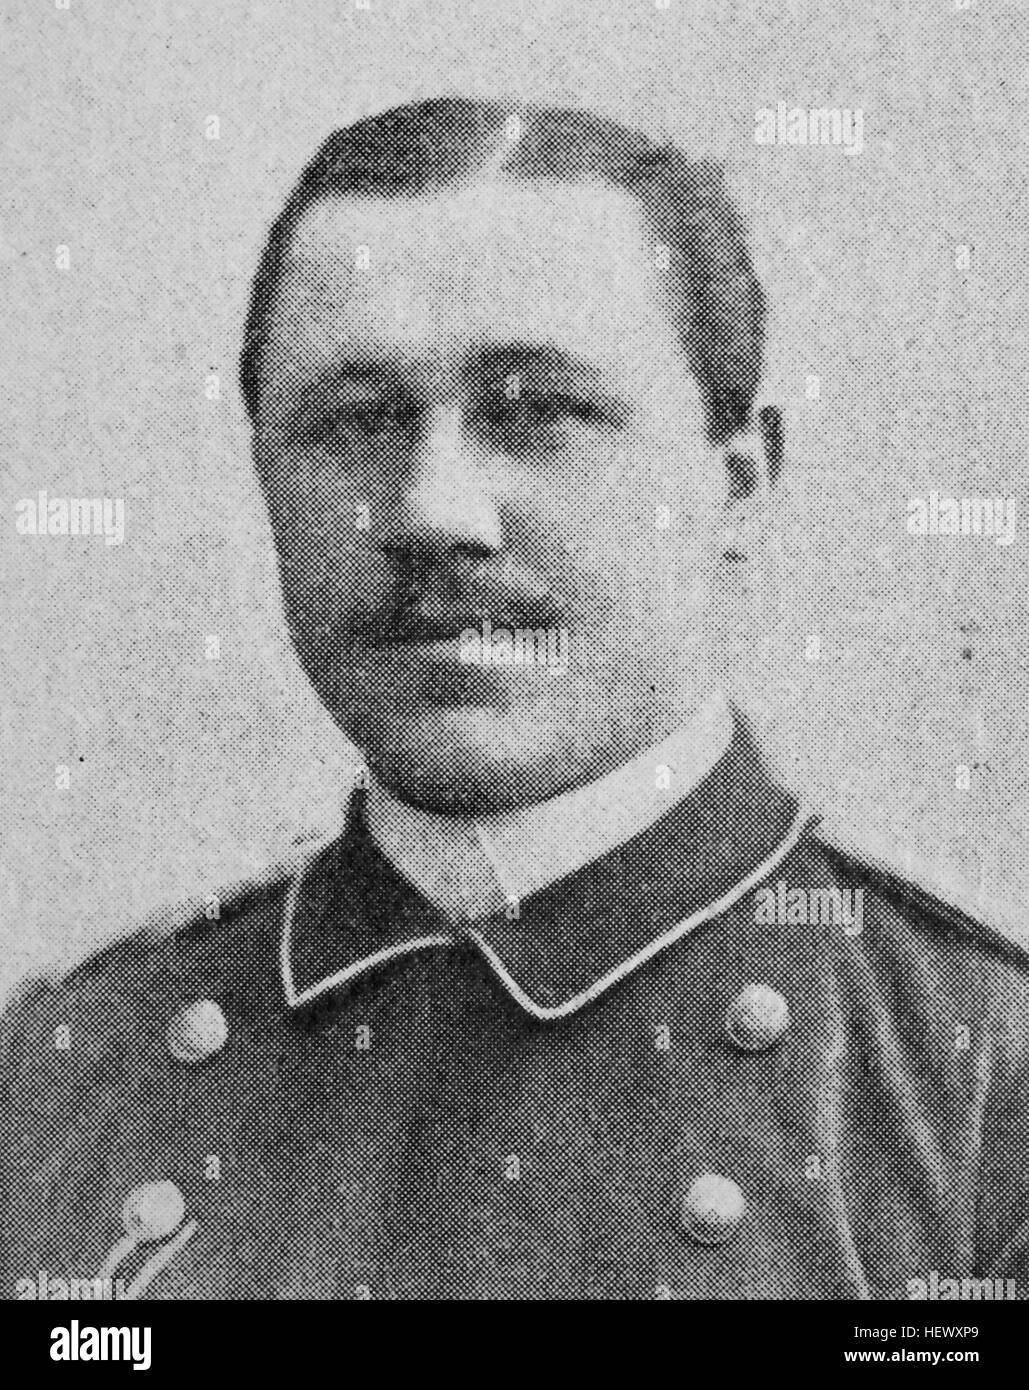 Hans Gustav Ferdinand von Ramsay, ab 1911 von Ramsay, 1862 - 1938, officier allemand und Forschungsreisender., photo de 1895, l'amélioration numérique Banque D'Images